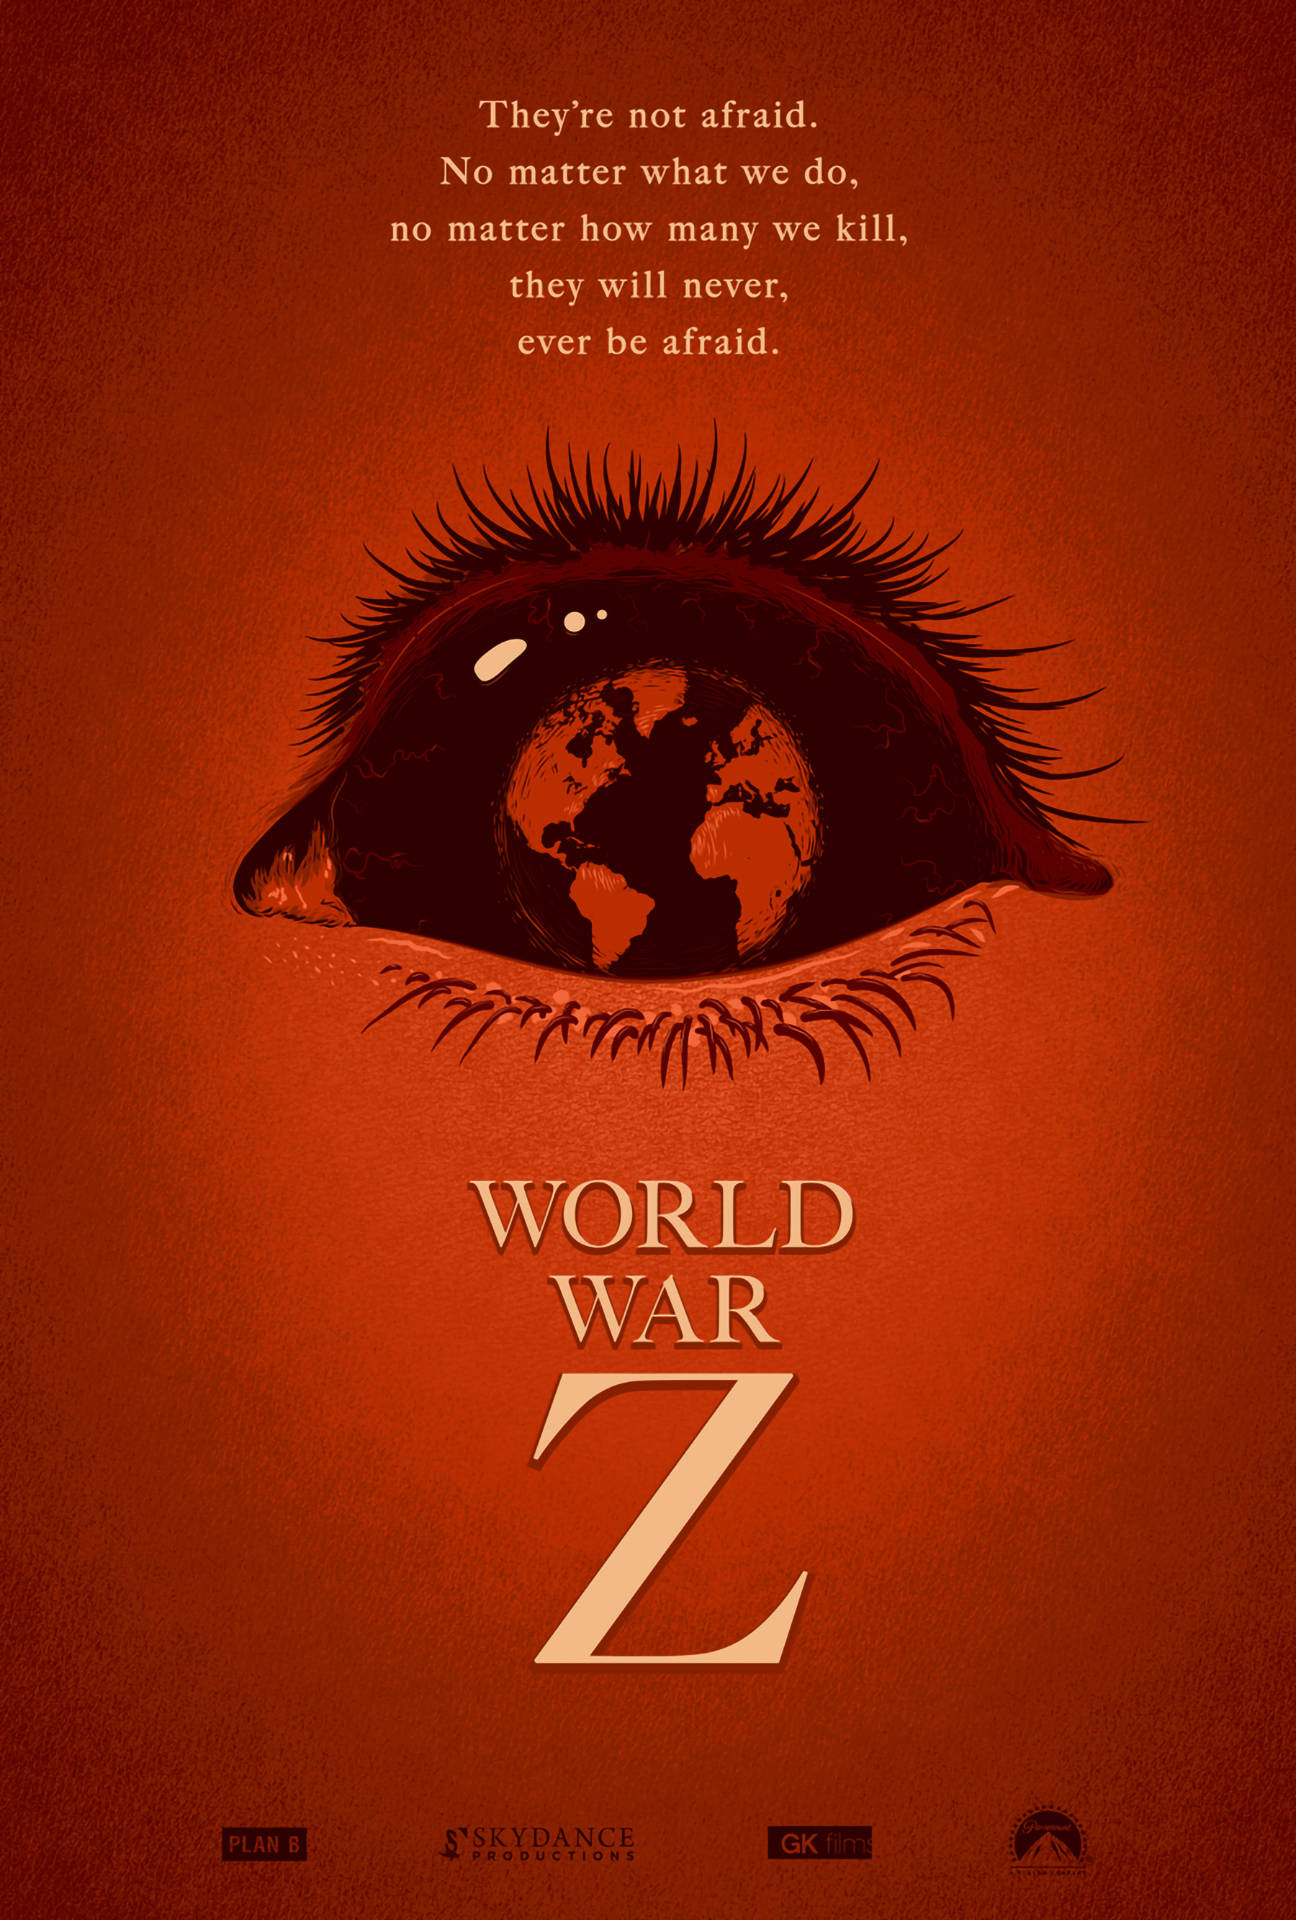 World War Z Red Eye Background